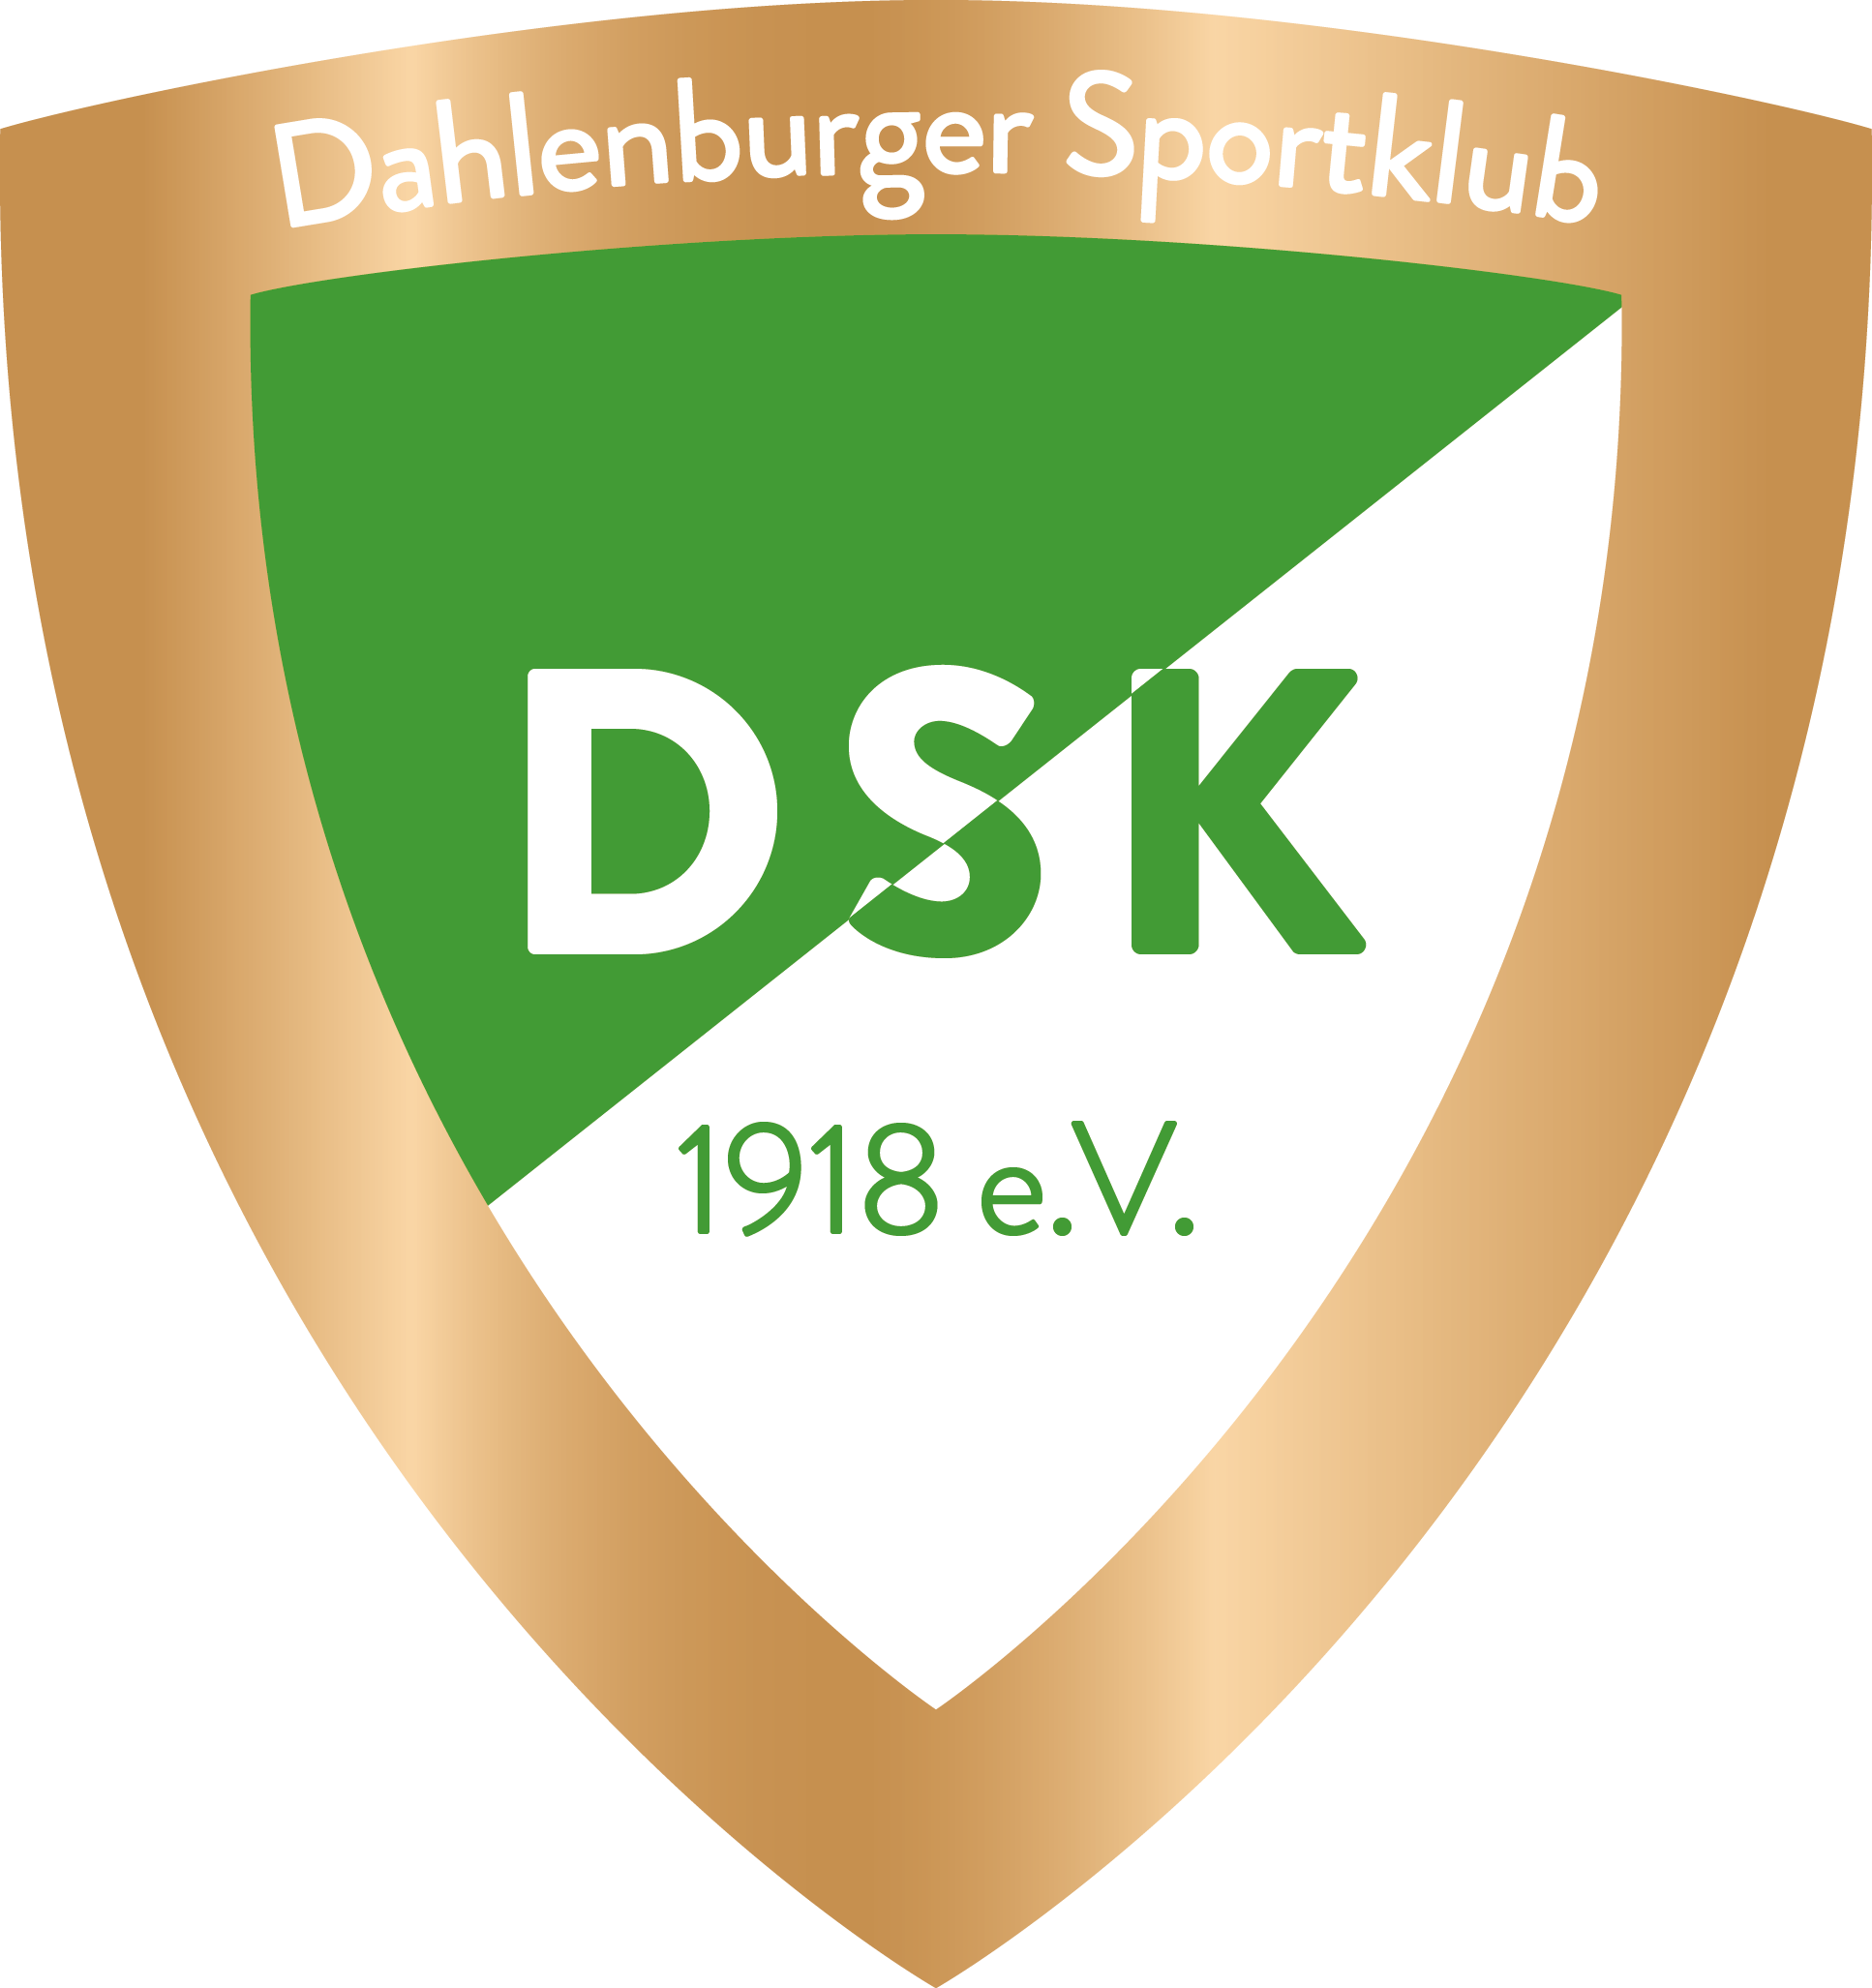 Dahlenburger SK von 1918 e.V.